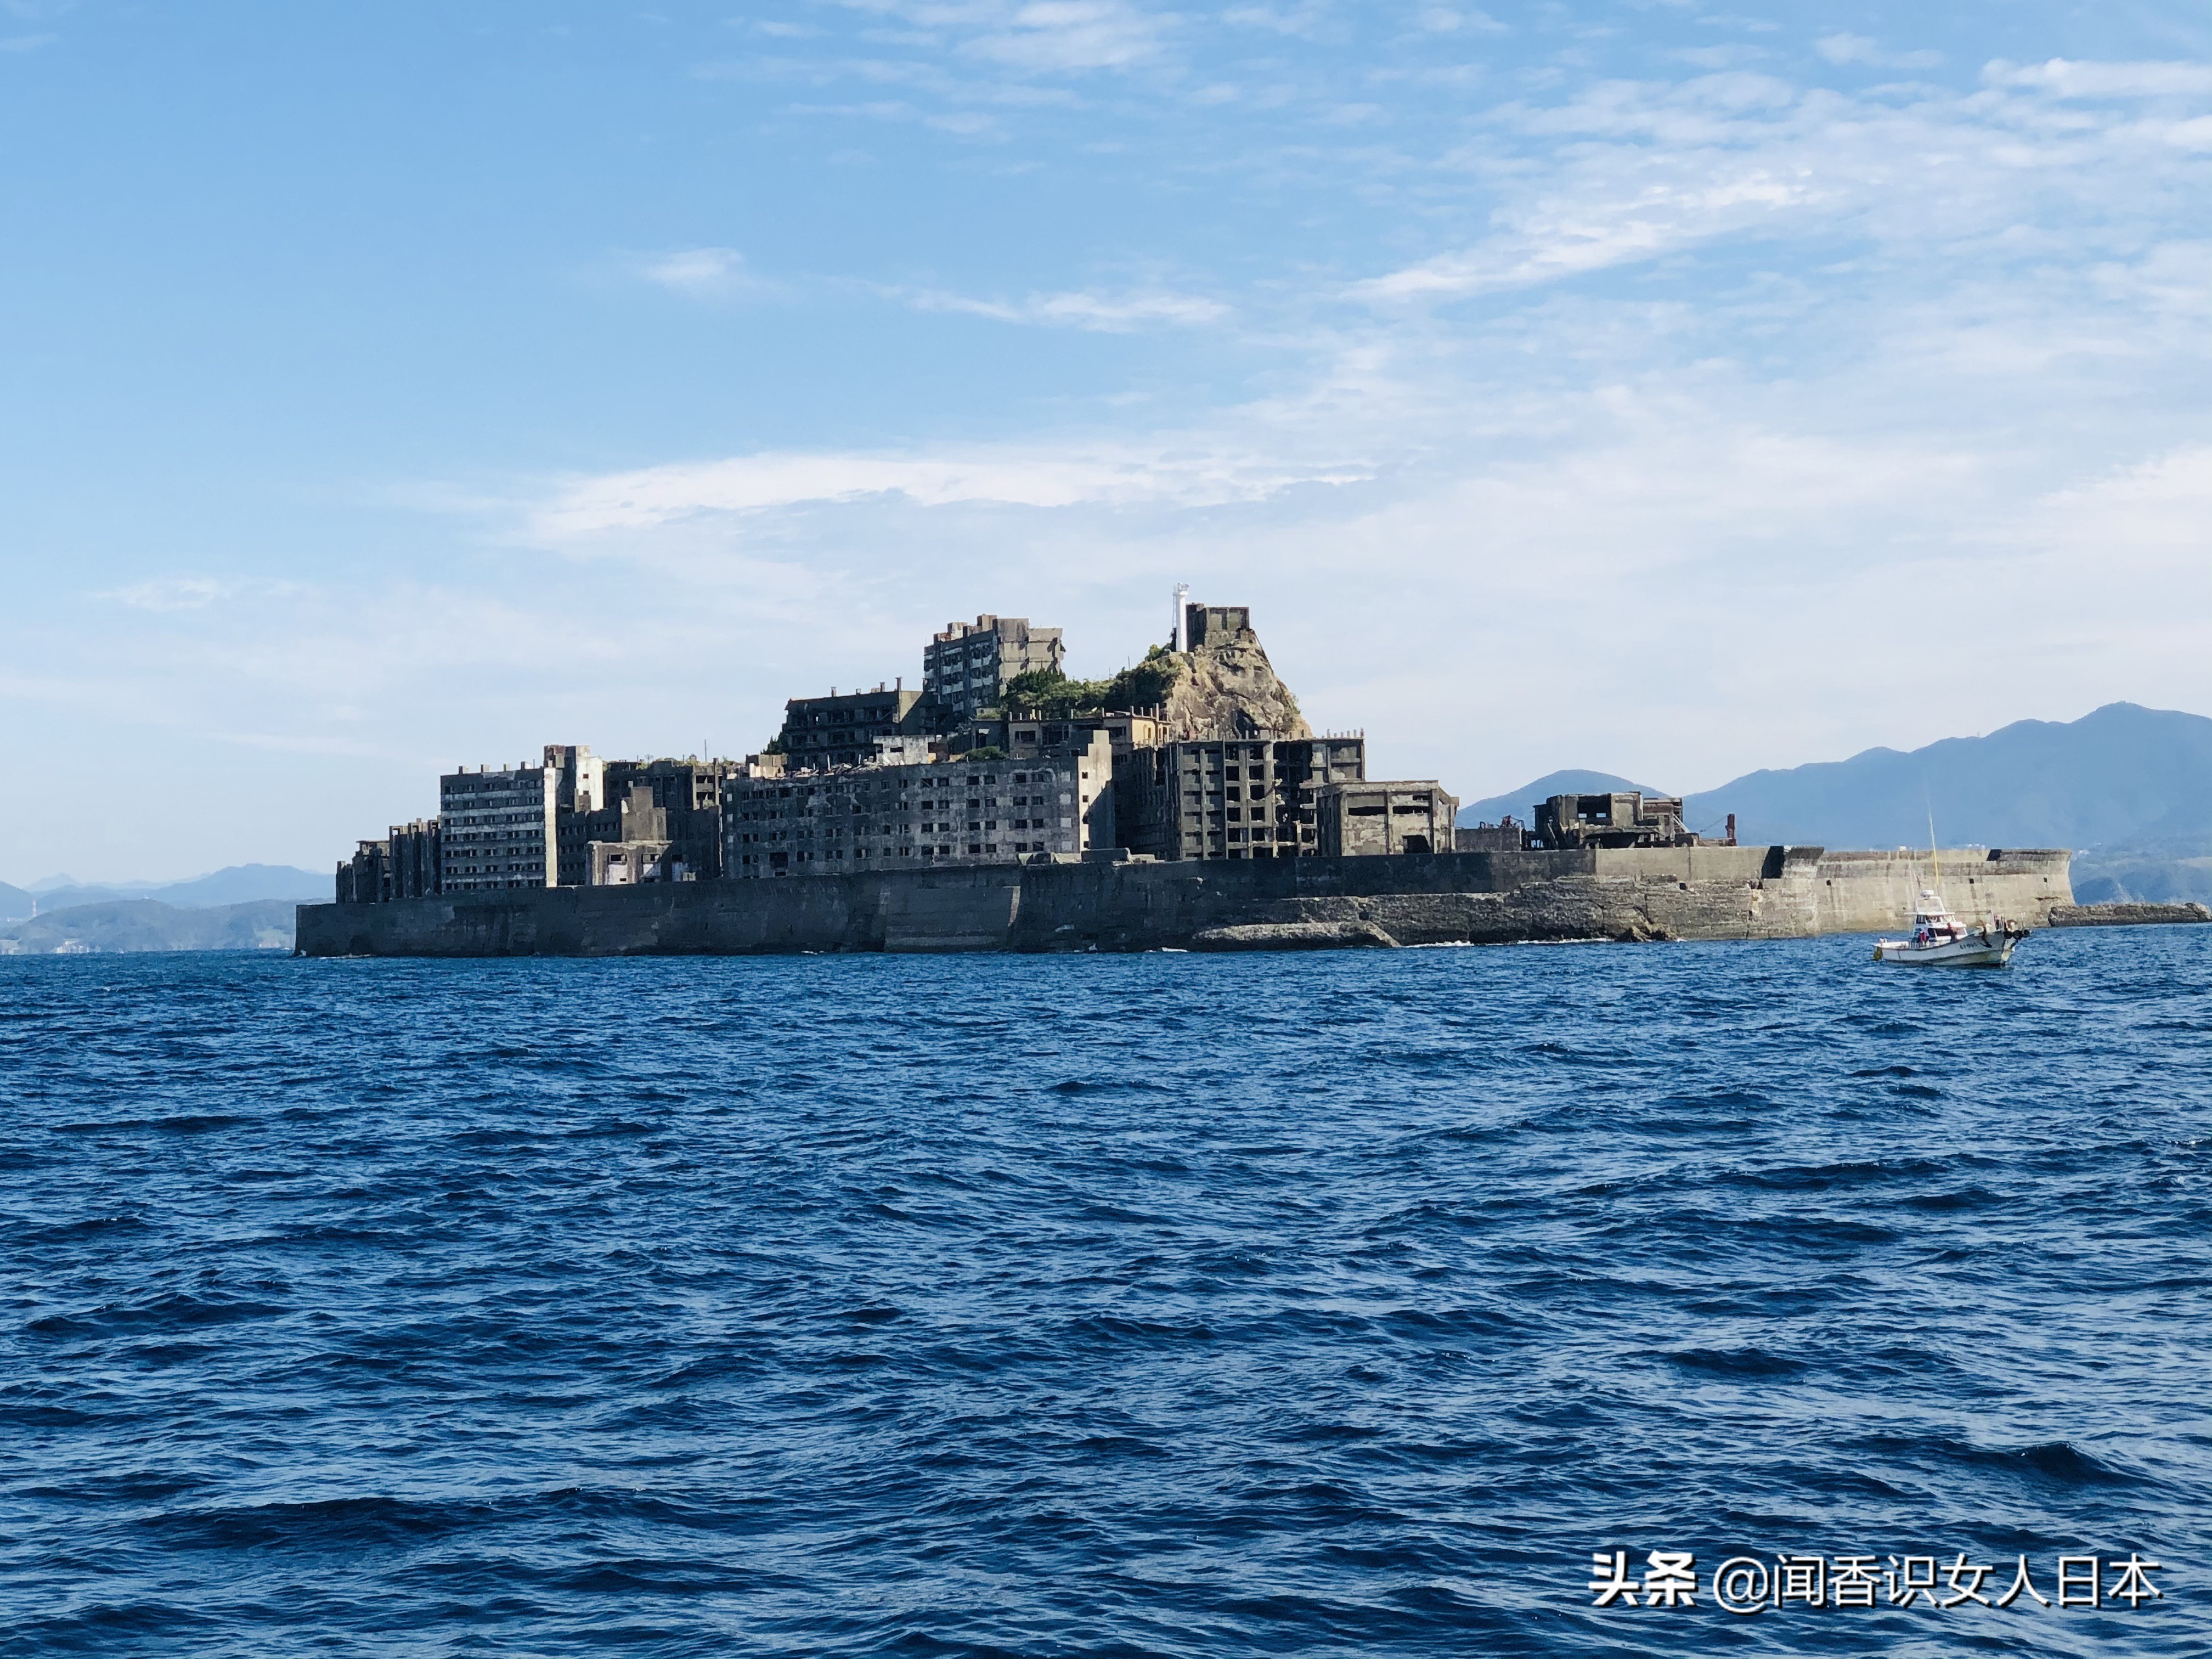 原创日本军舰岛一座废弃的无人岛现在是热门观光地岛上废墟遍地